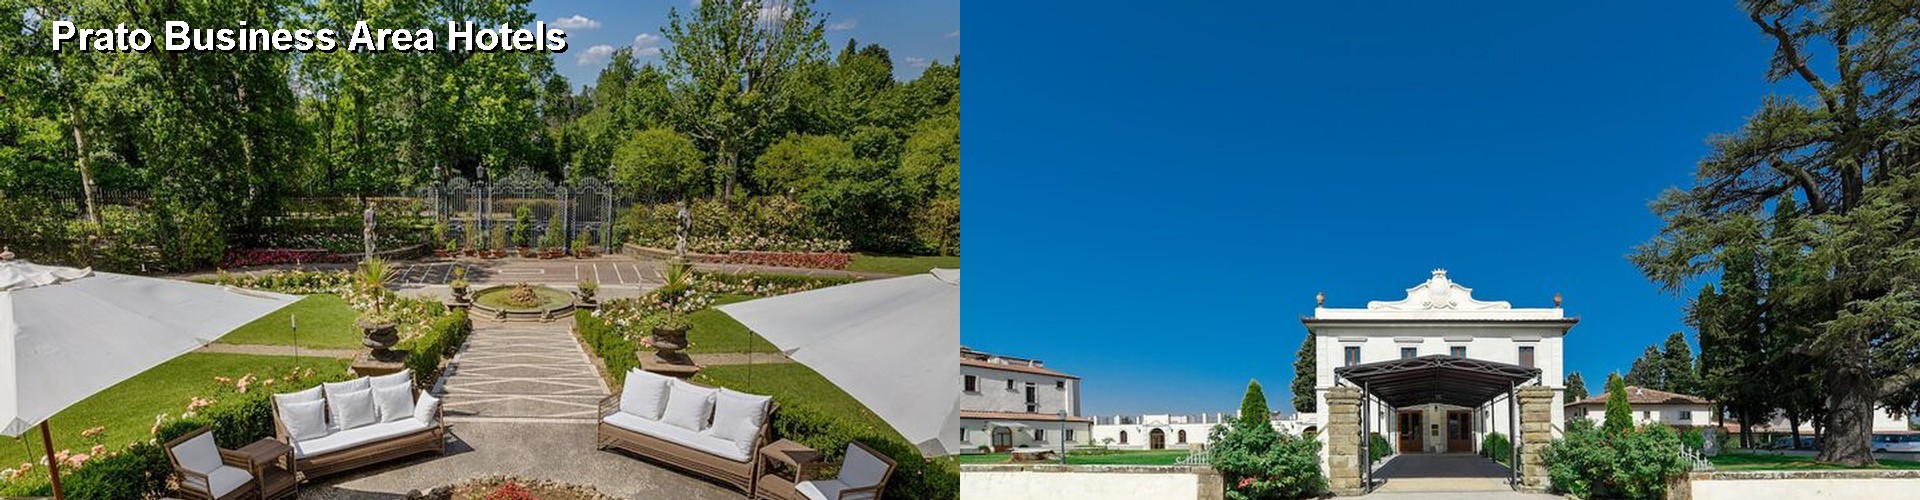 5 Best Hotels near Prato Business Area